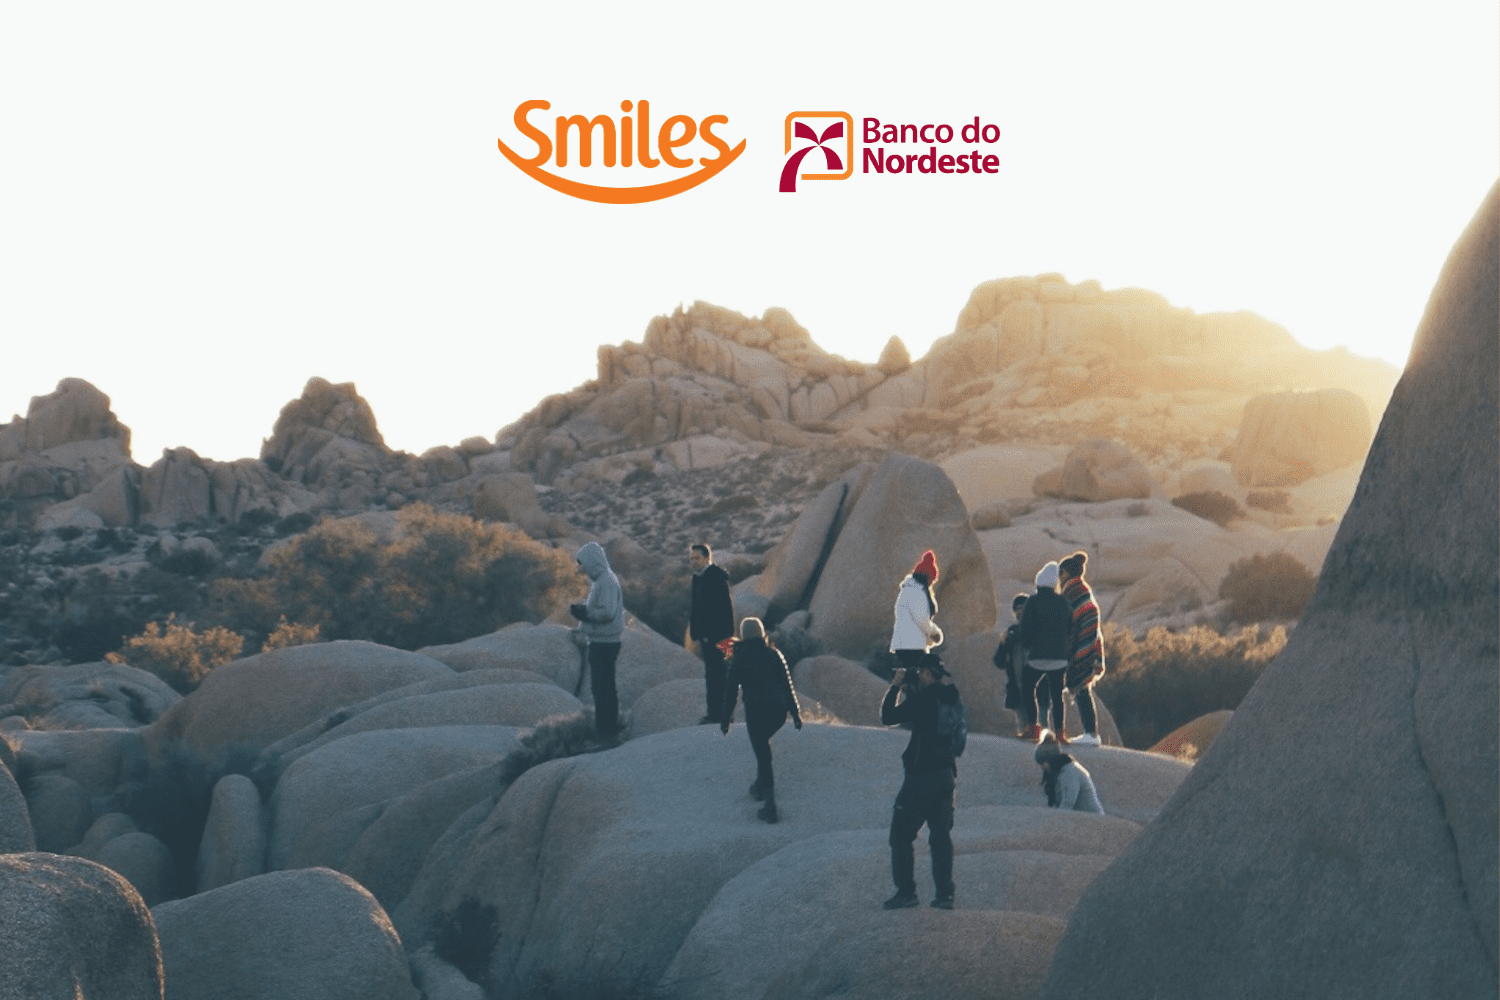 grupo de amigos em cima de pedras com logo Smiles e Bando co Nordeste bônus Smiles